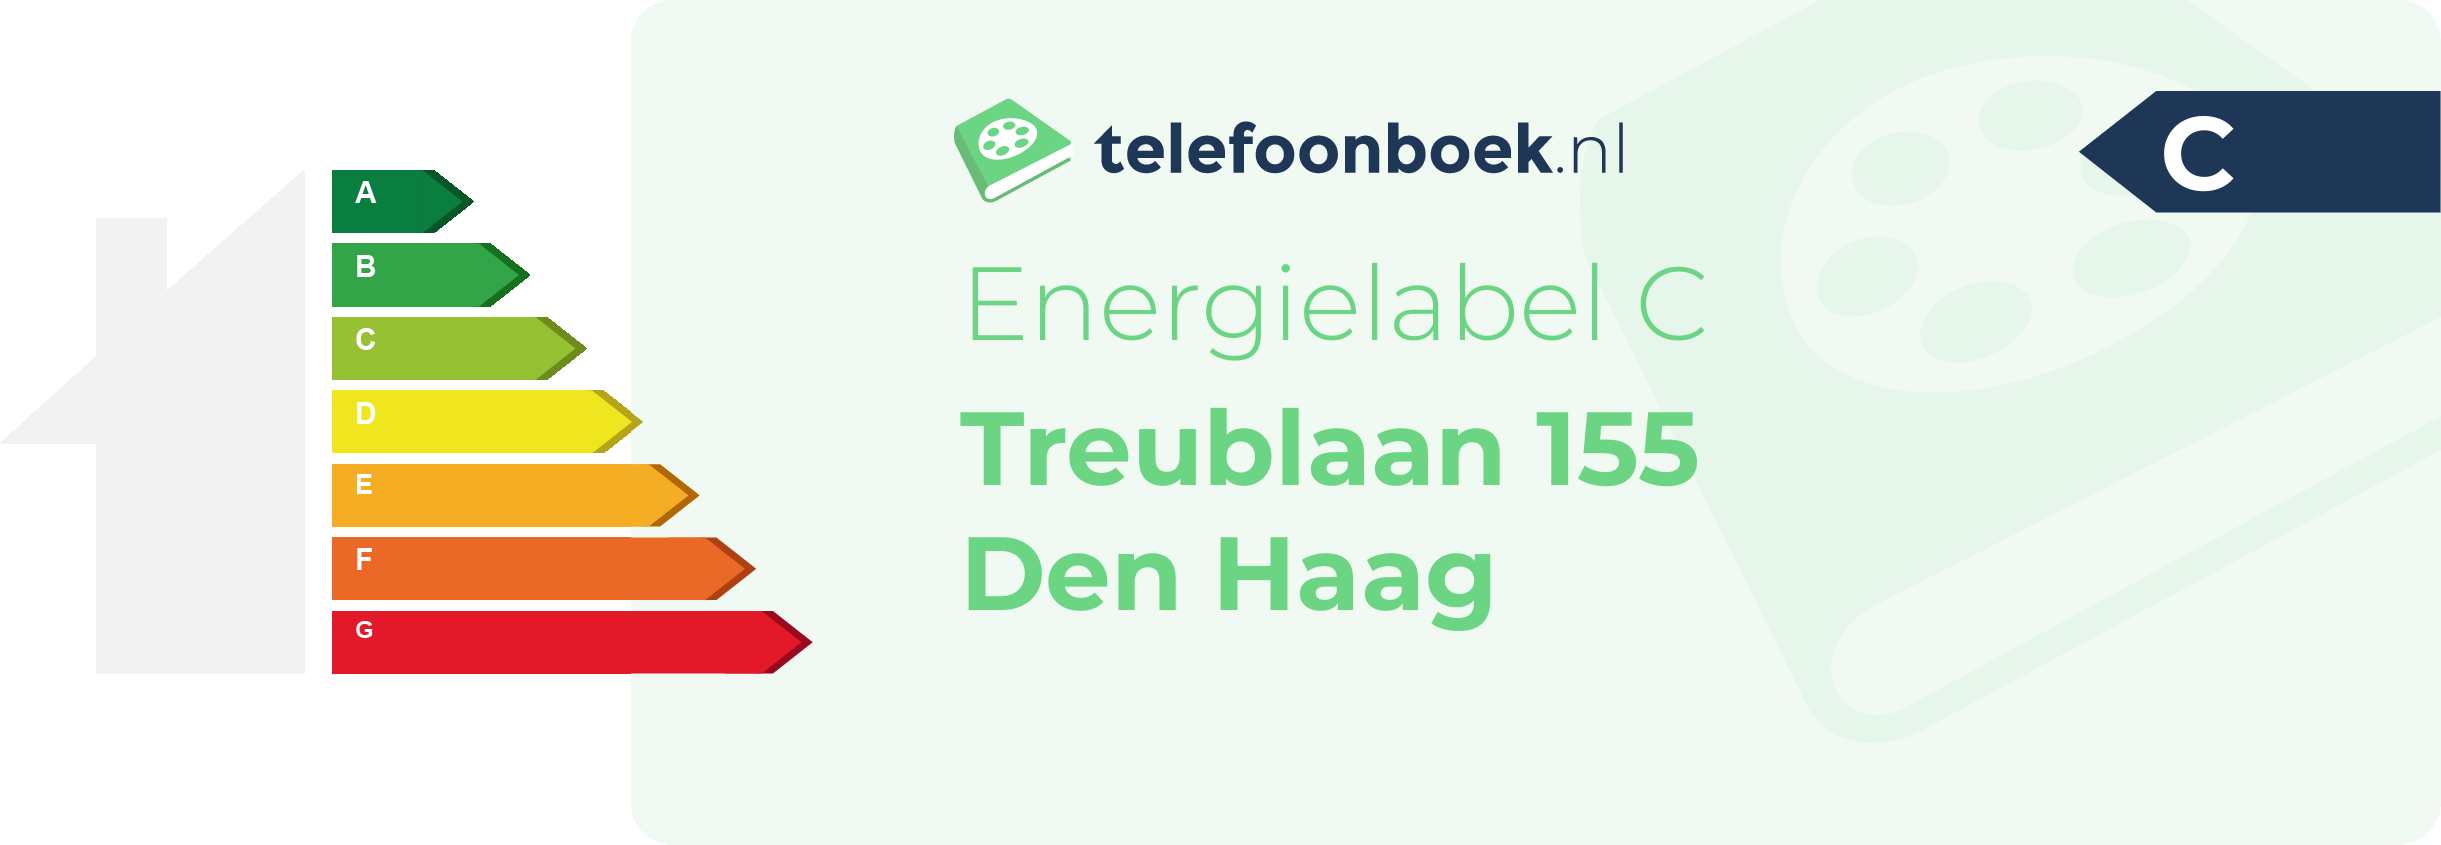 Energielabel Treublaan 155 Den Haag